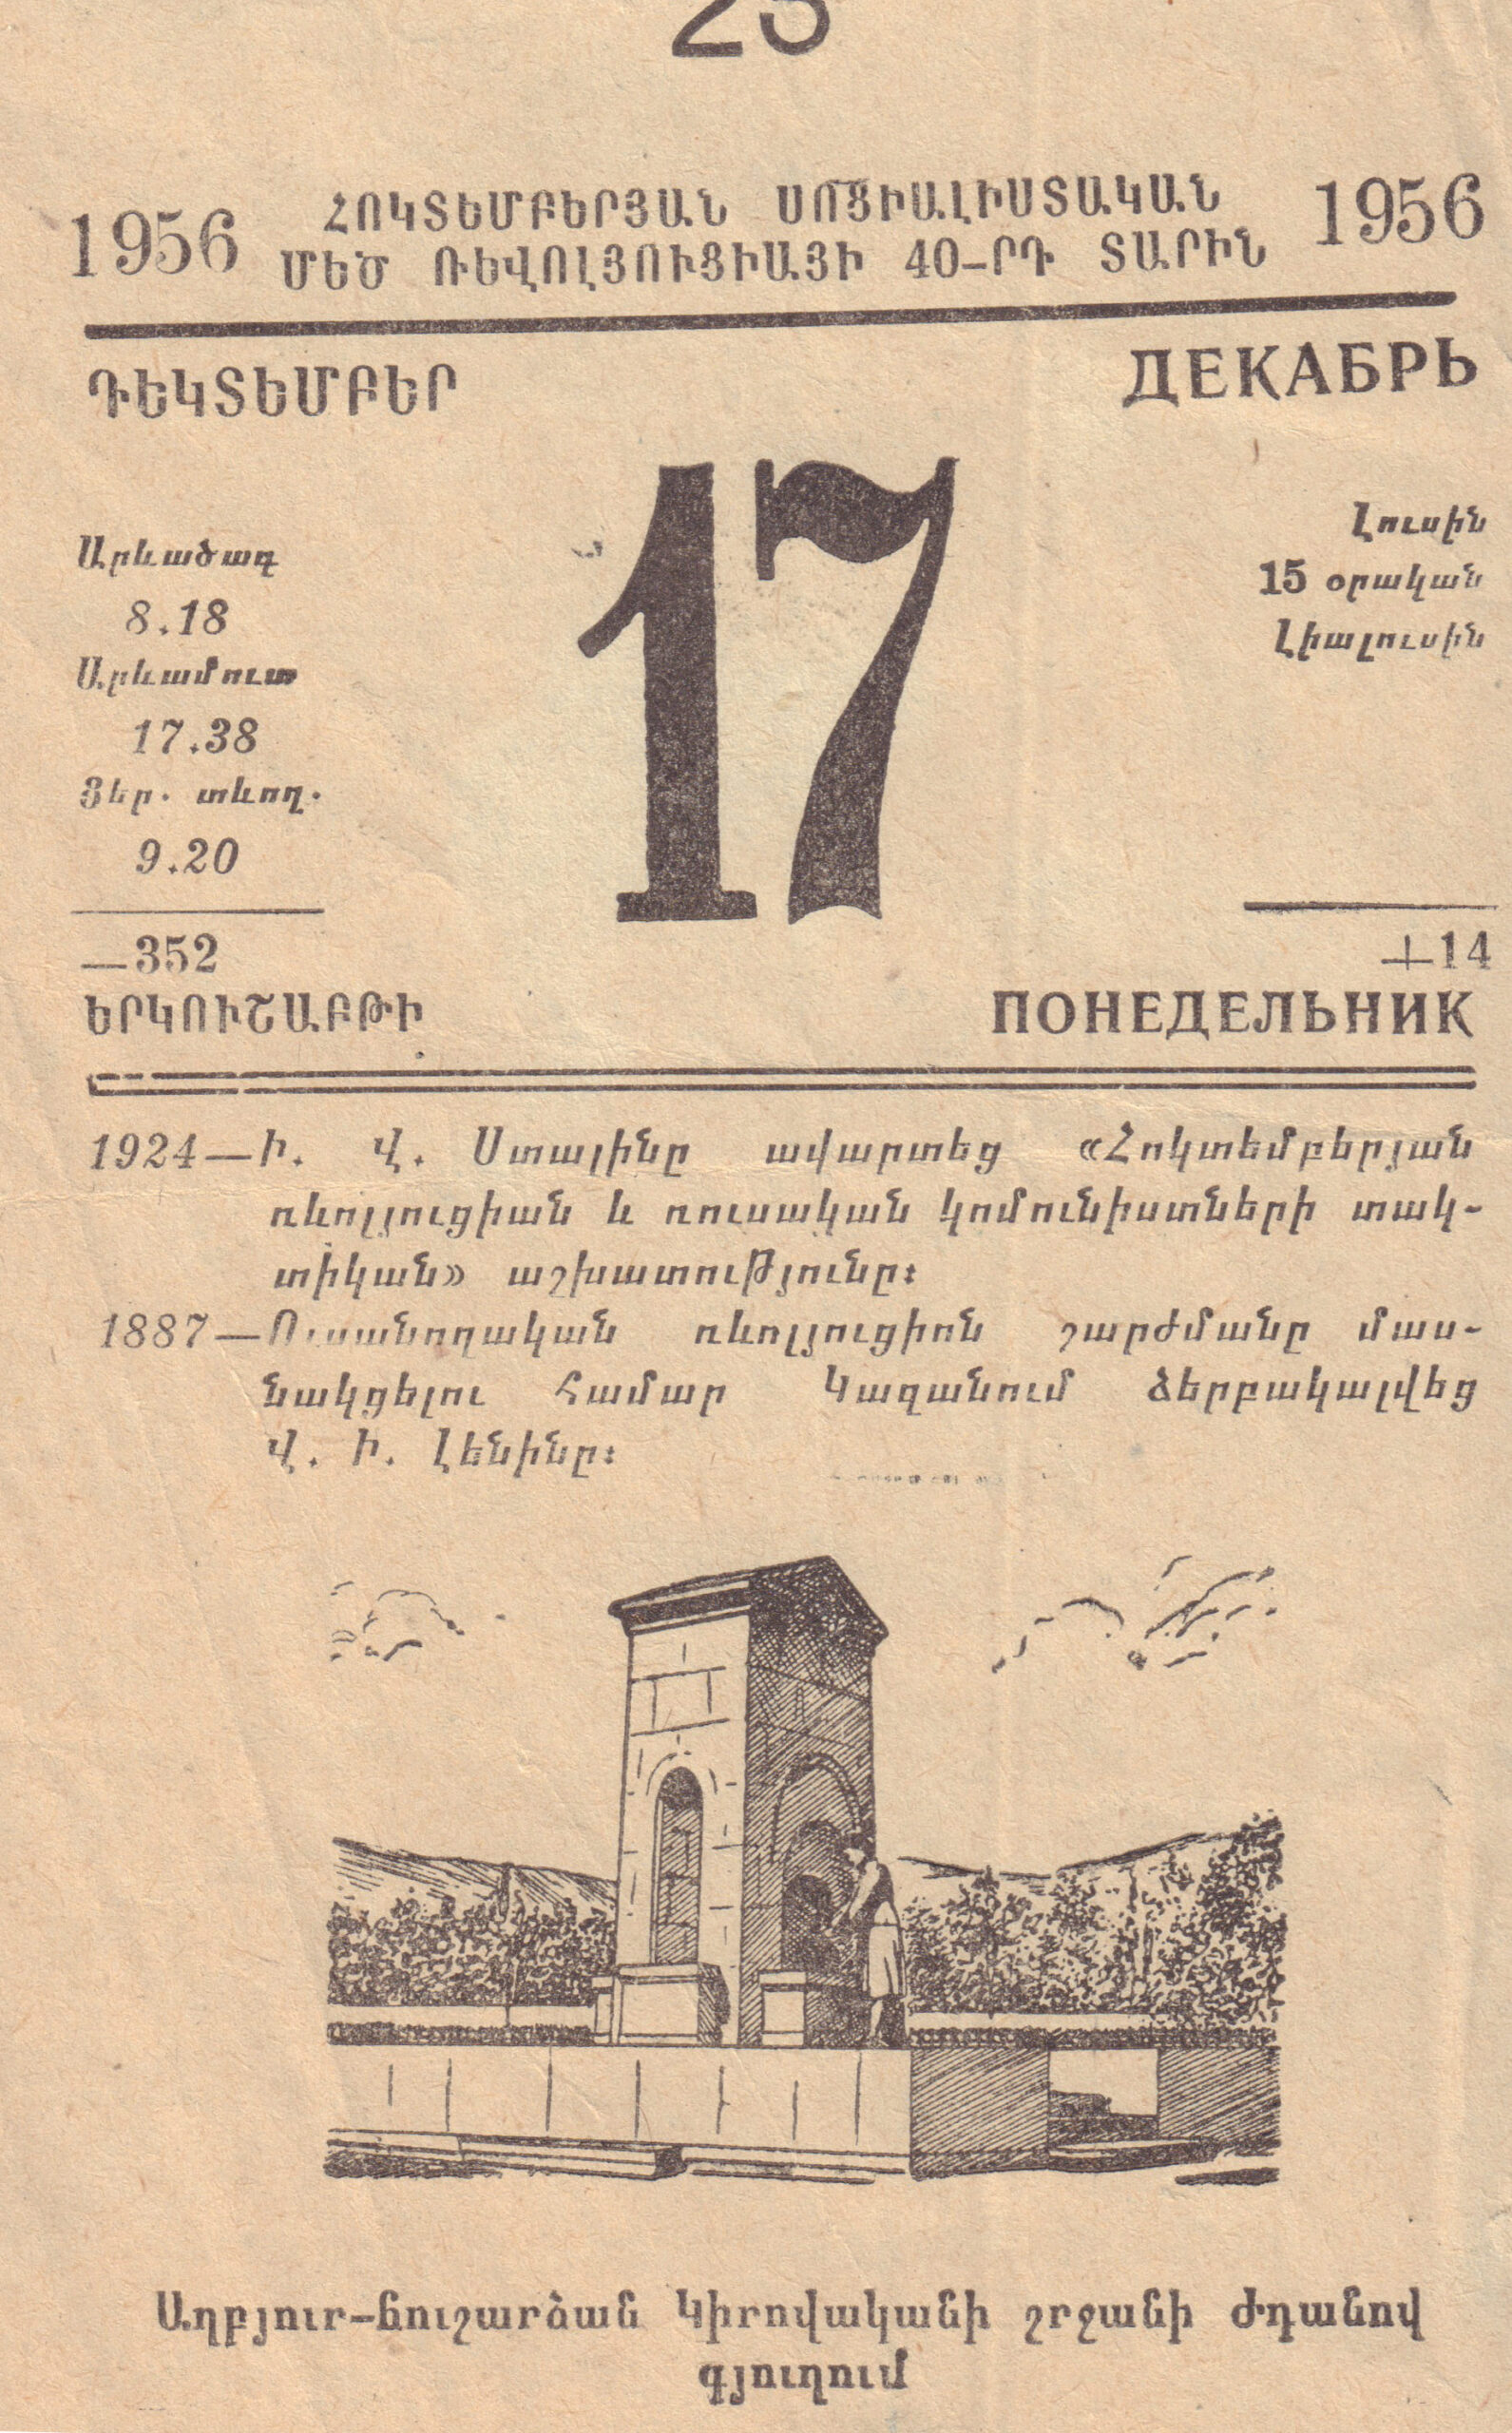 1956 թ.-ի օրացույցում տպագրված աղբյուր-հուշարձանի գծանկարը